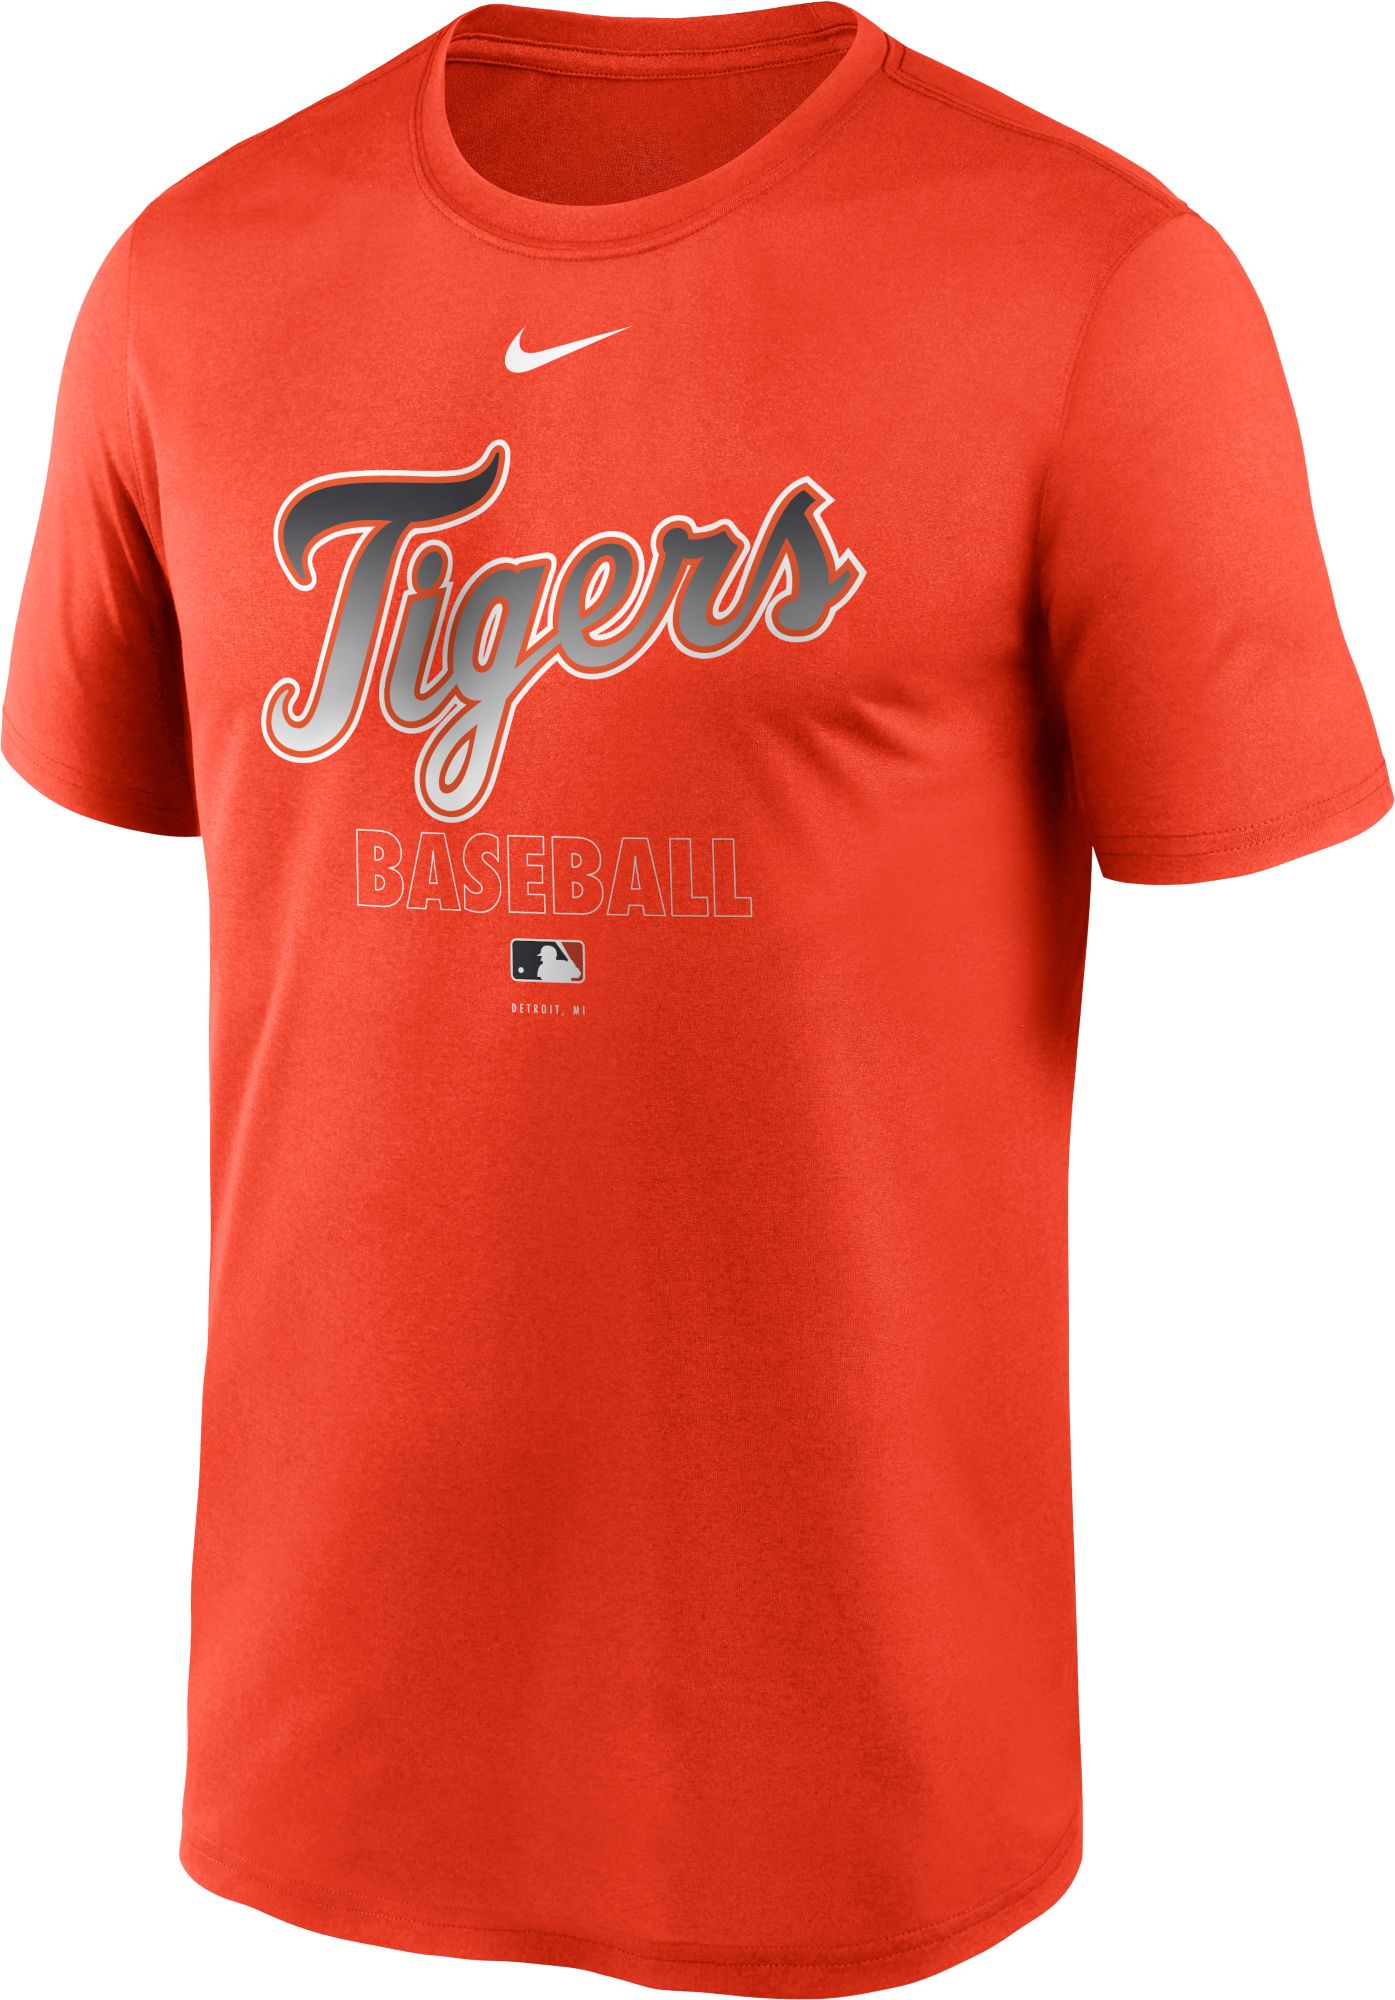 detroit tigers nike dri fit shirt